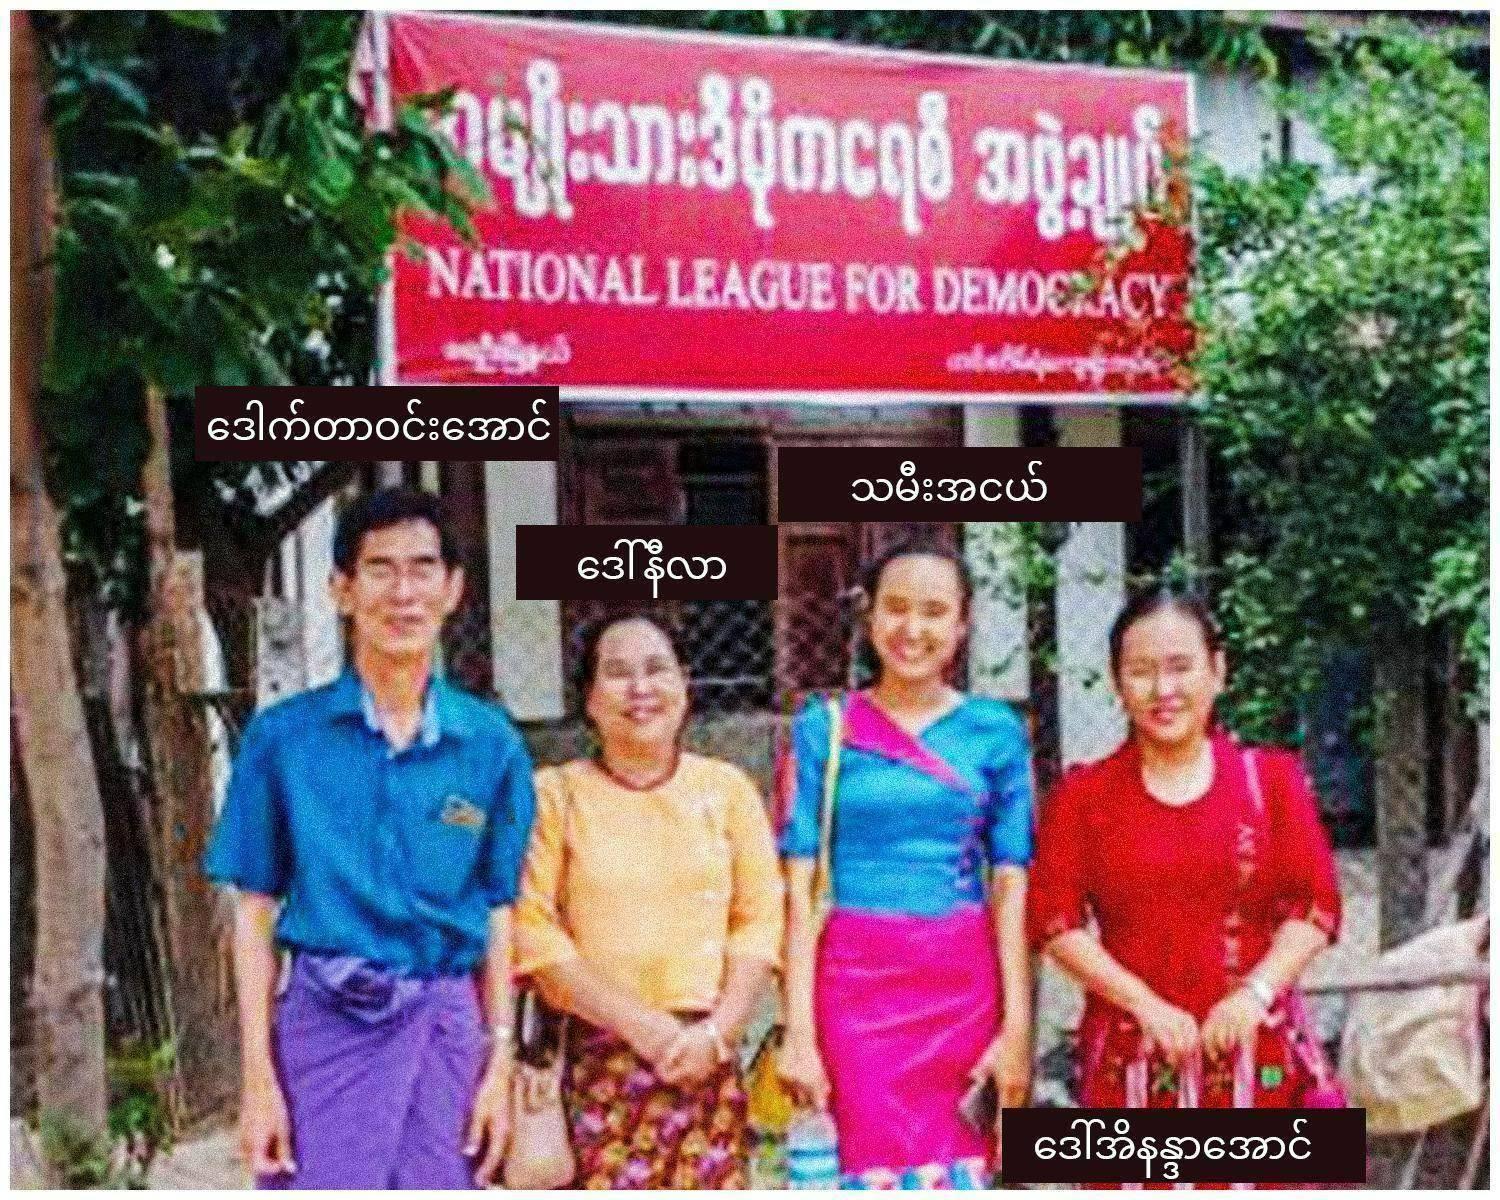 ခင်ဦး NLDအမတ်ရဲ့ ဇနီးနဲ့ သမီးဖြစ်သူတို့ကို စစ်ခုံရုံးက အလုပ်ကြမ်းနဲ့ထောင်ဒဏ် ၃ နှစ်စီချမှတ်